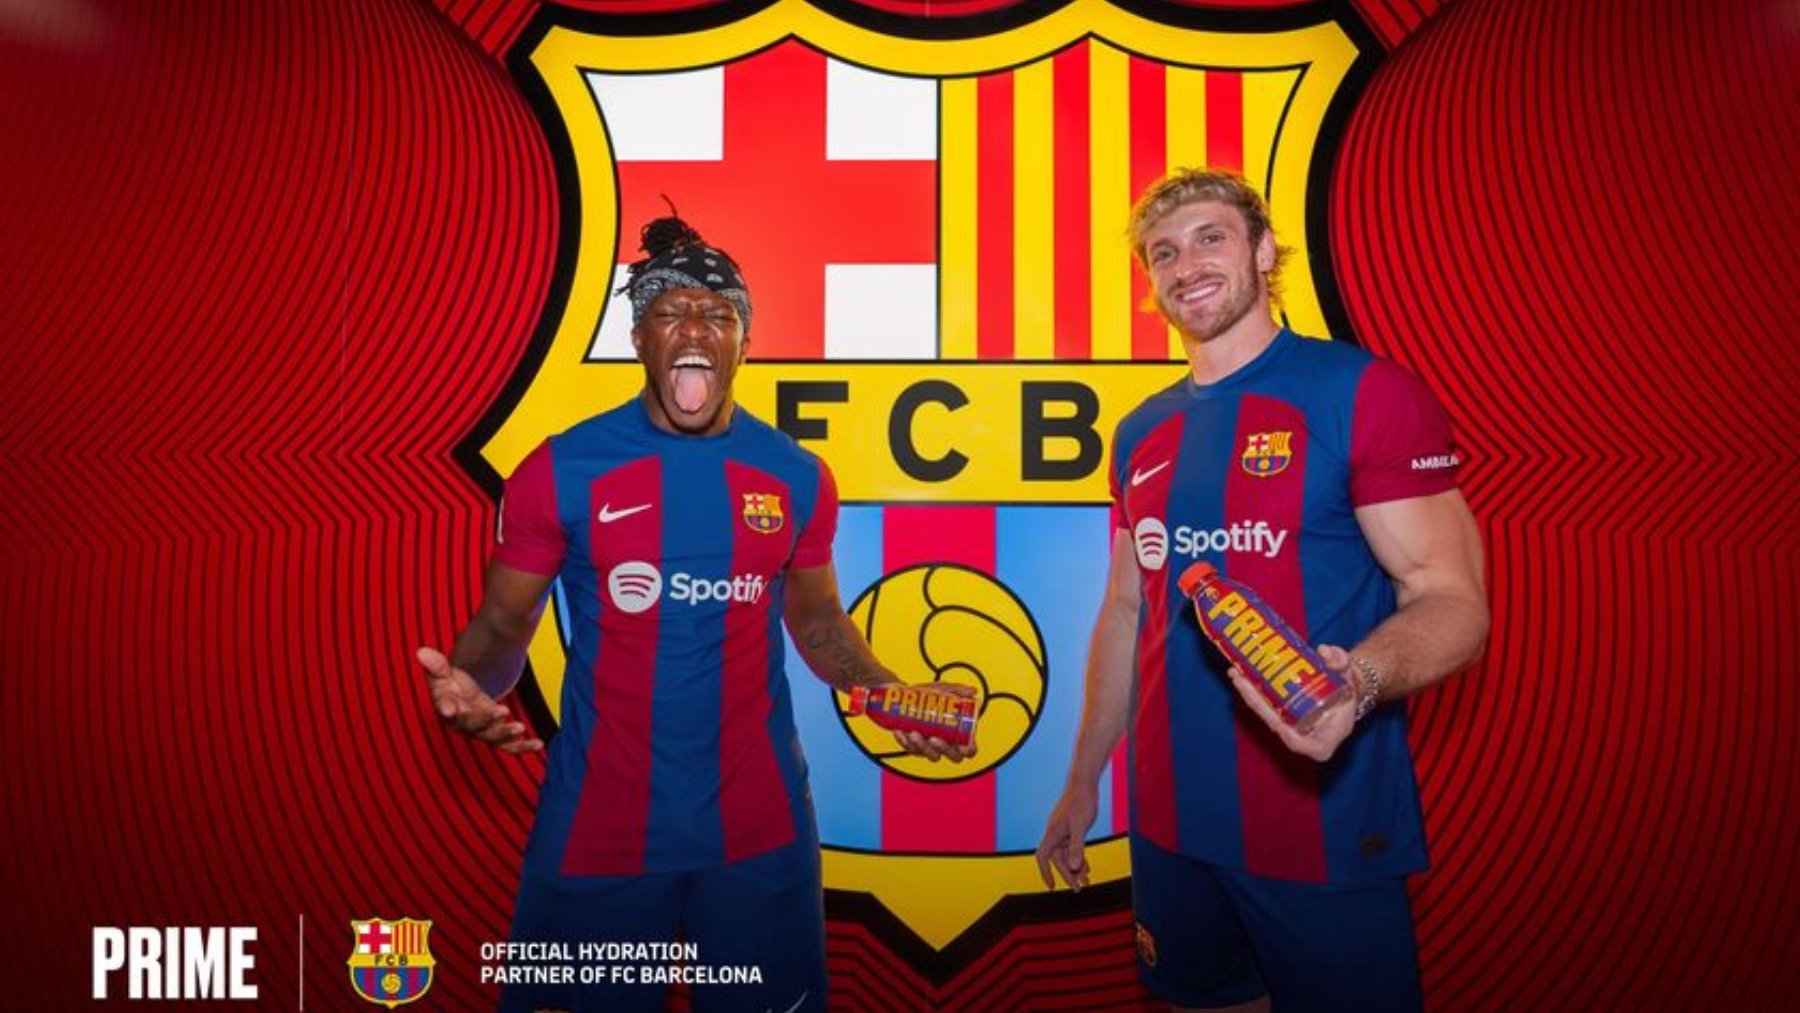 La empresa de bebidas PRIME, en su anuncio como patrocionador del Barça.